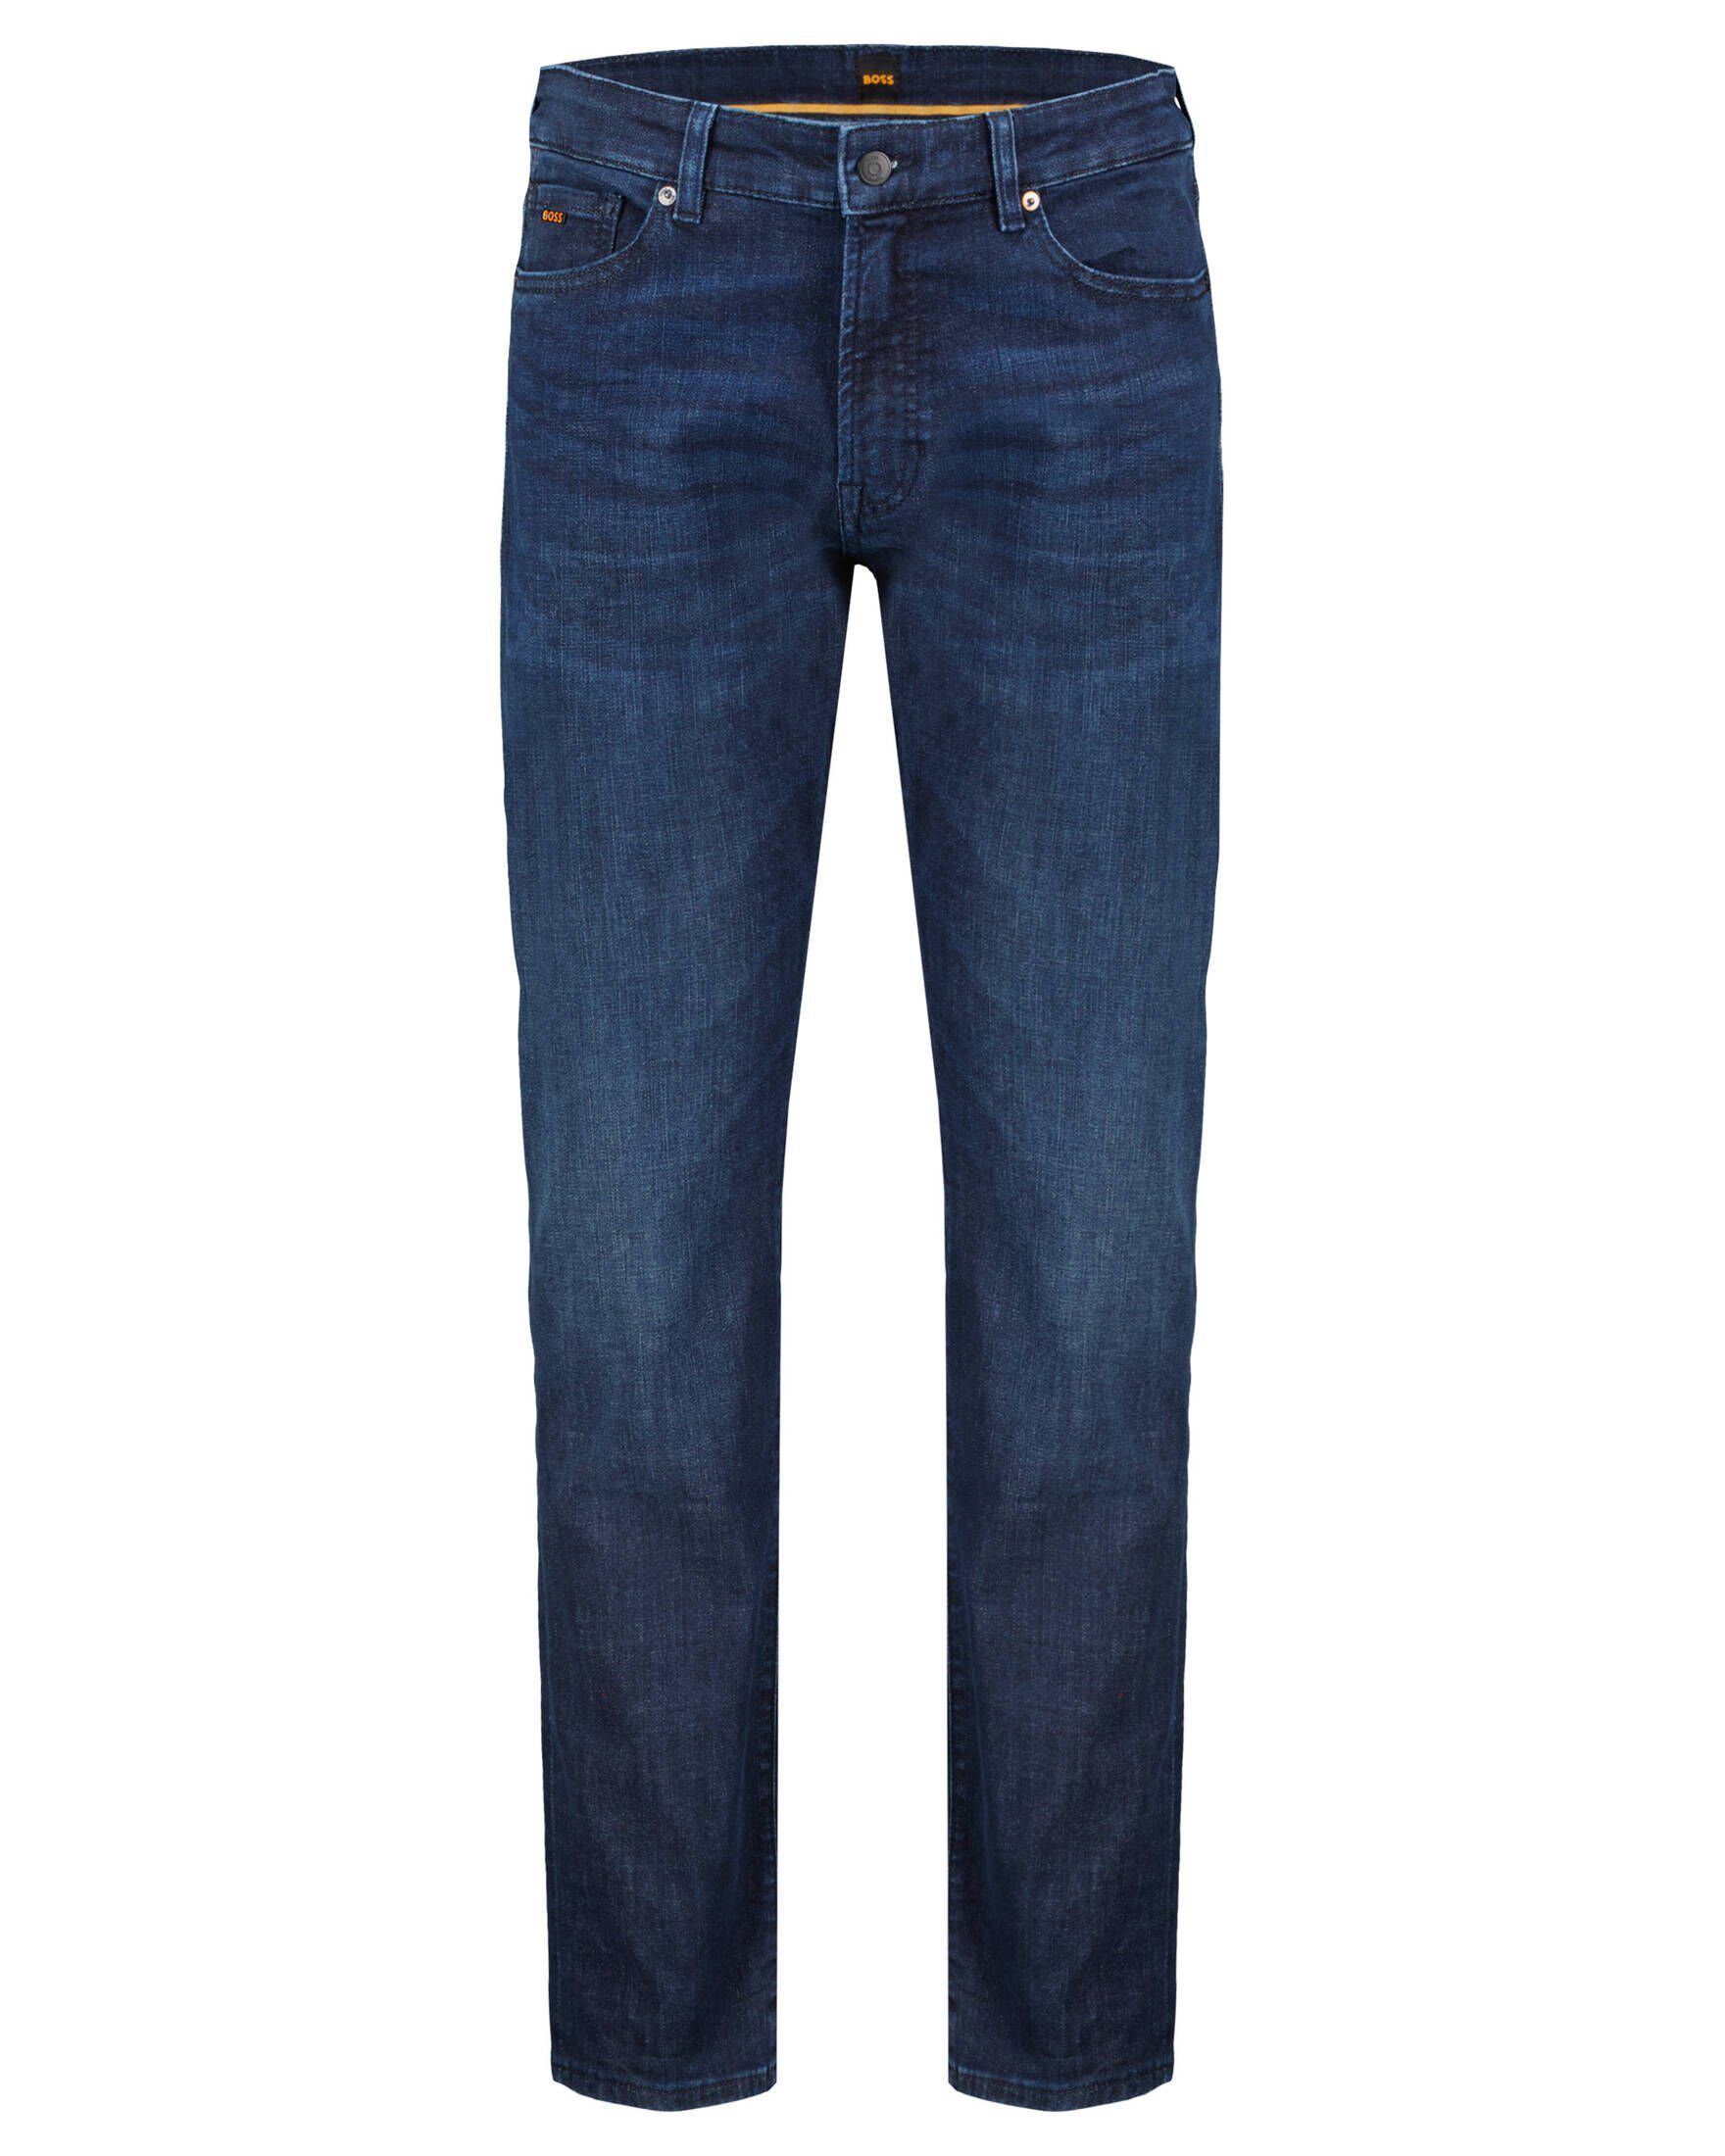 BOSS 5-Pocket-Jeans »Herren Jeans MAINE Regular Fit« online kaufen | OTTO